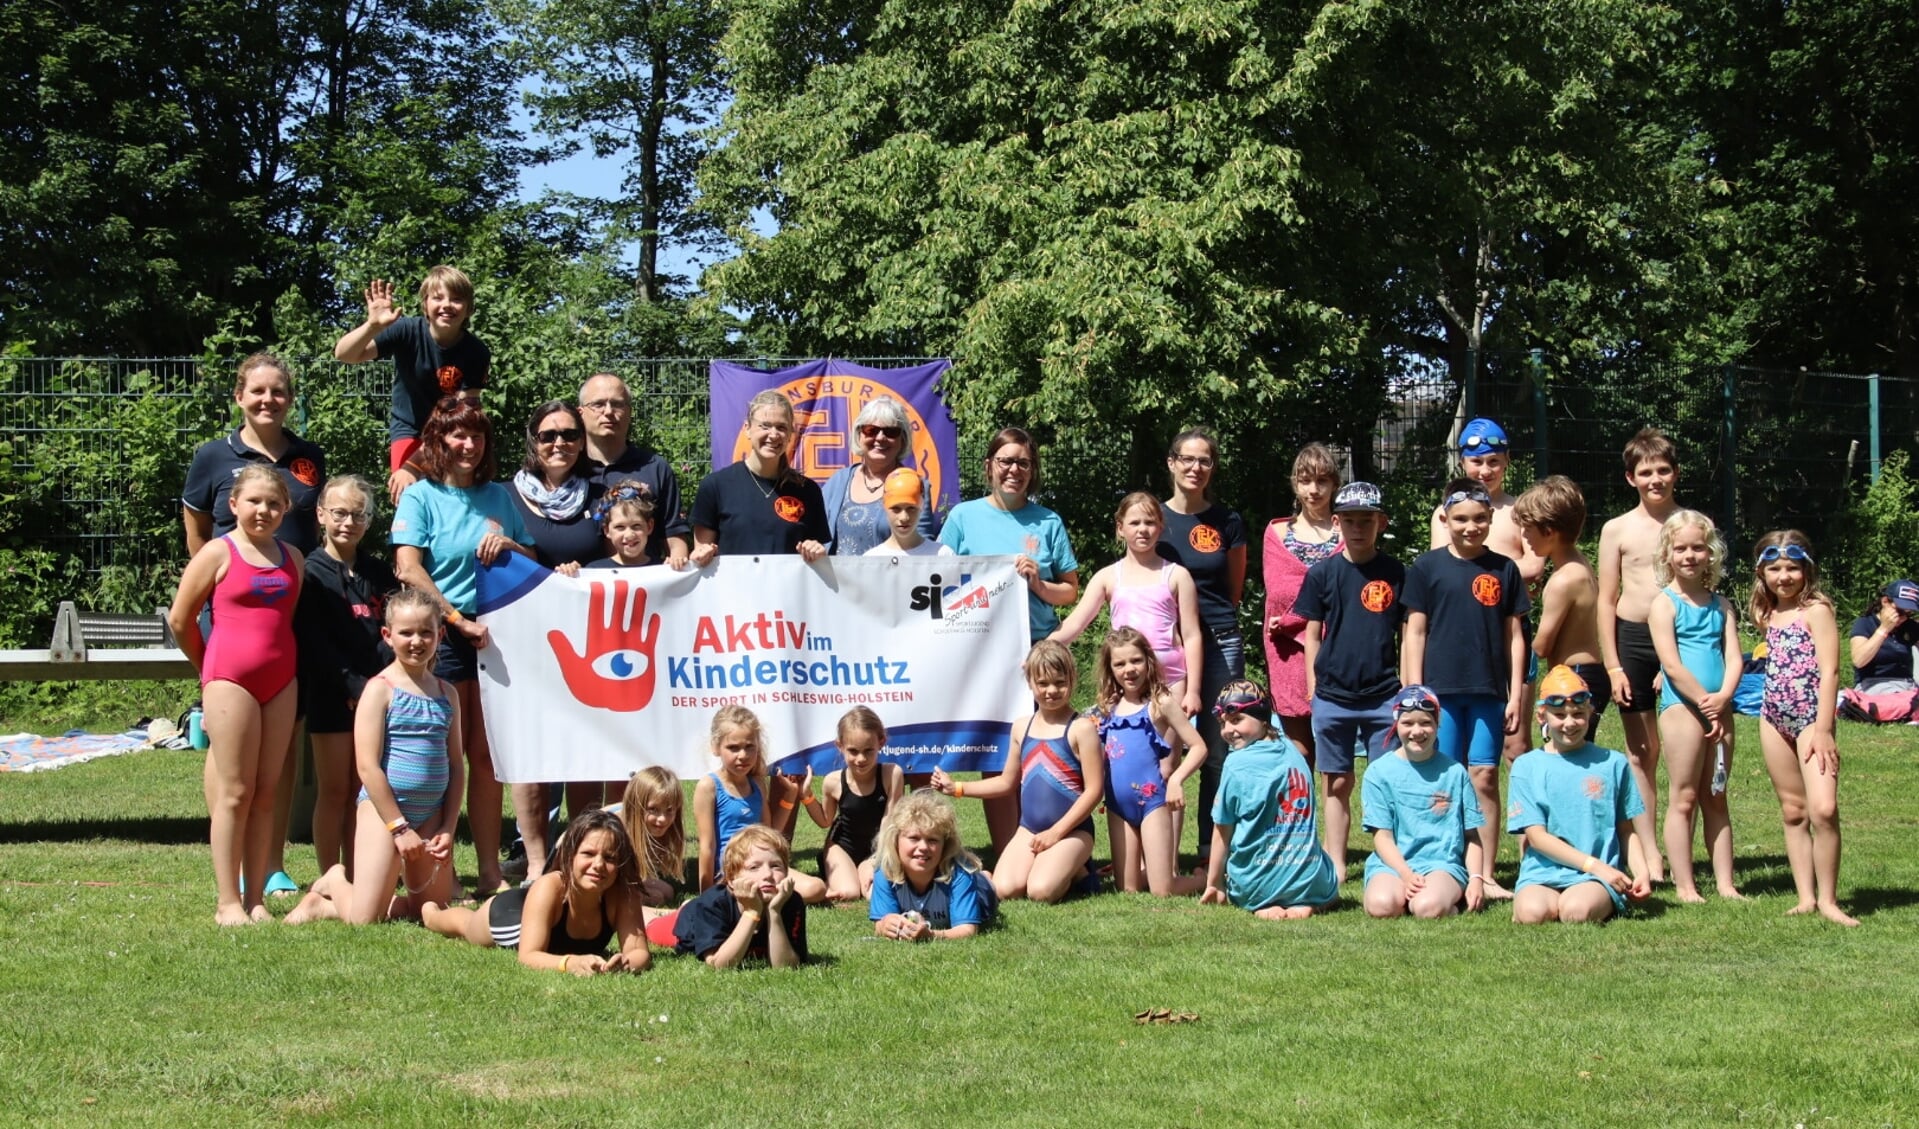 Der Flensburger Schwimmklub wurde für seine Arbeit im Kinderschutz ausgezeichnet.